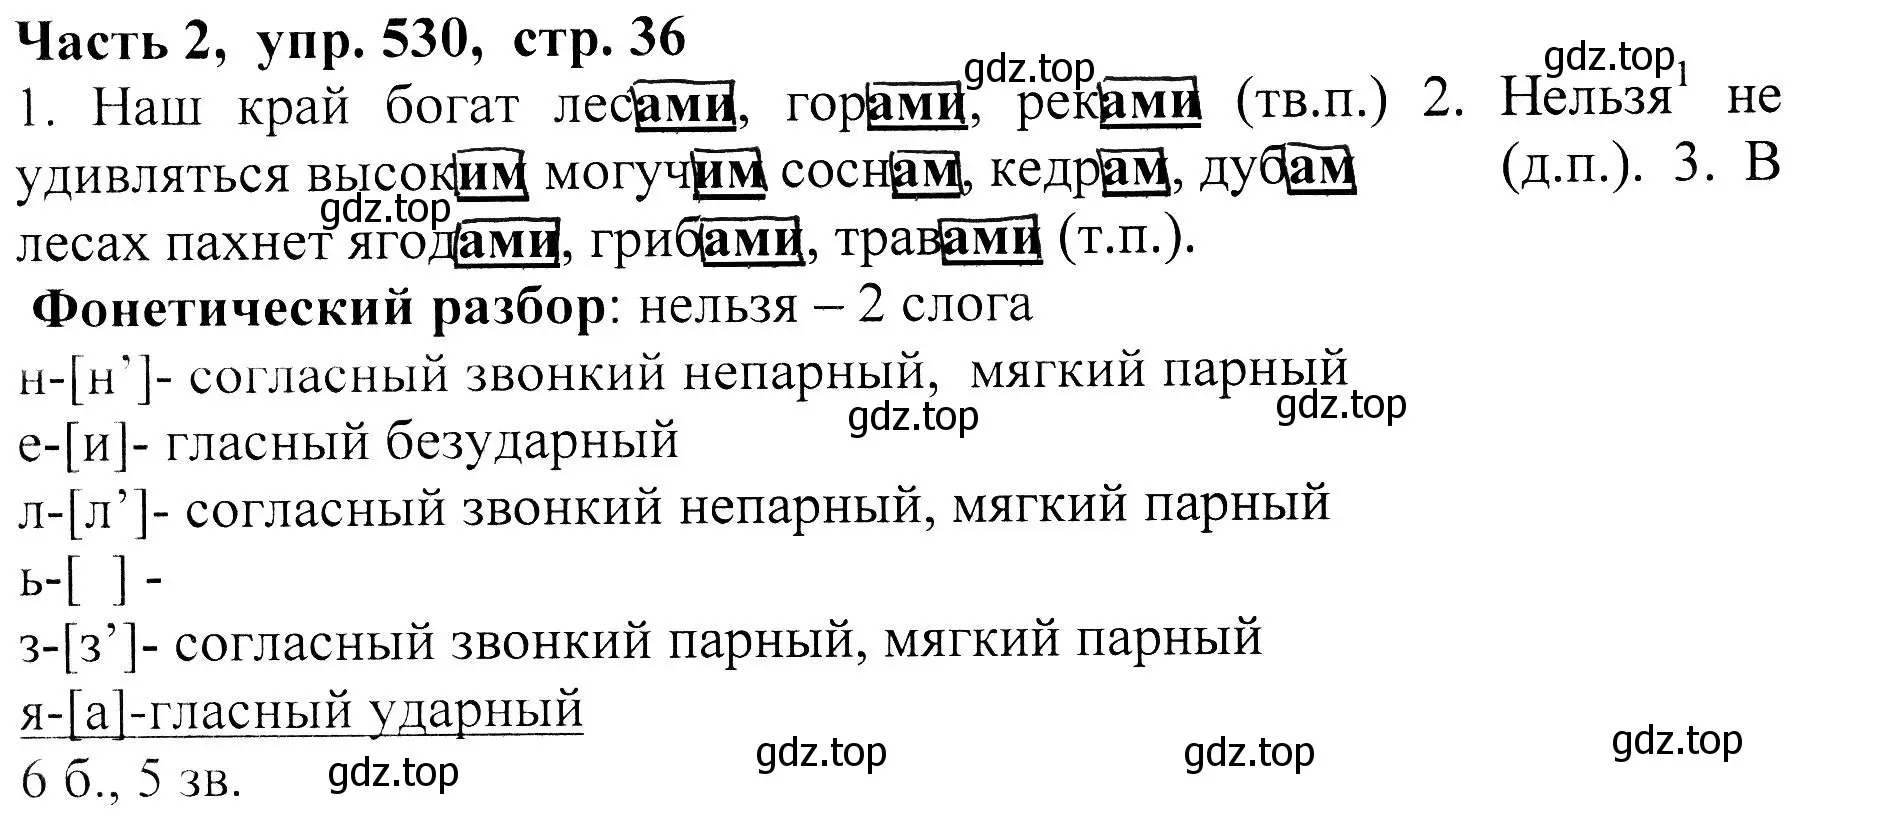 Решение Номер 530 (страница 36) гдз по русскому языку 5 класс Ладыженская, Баранов, учебник 2 часть